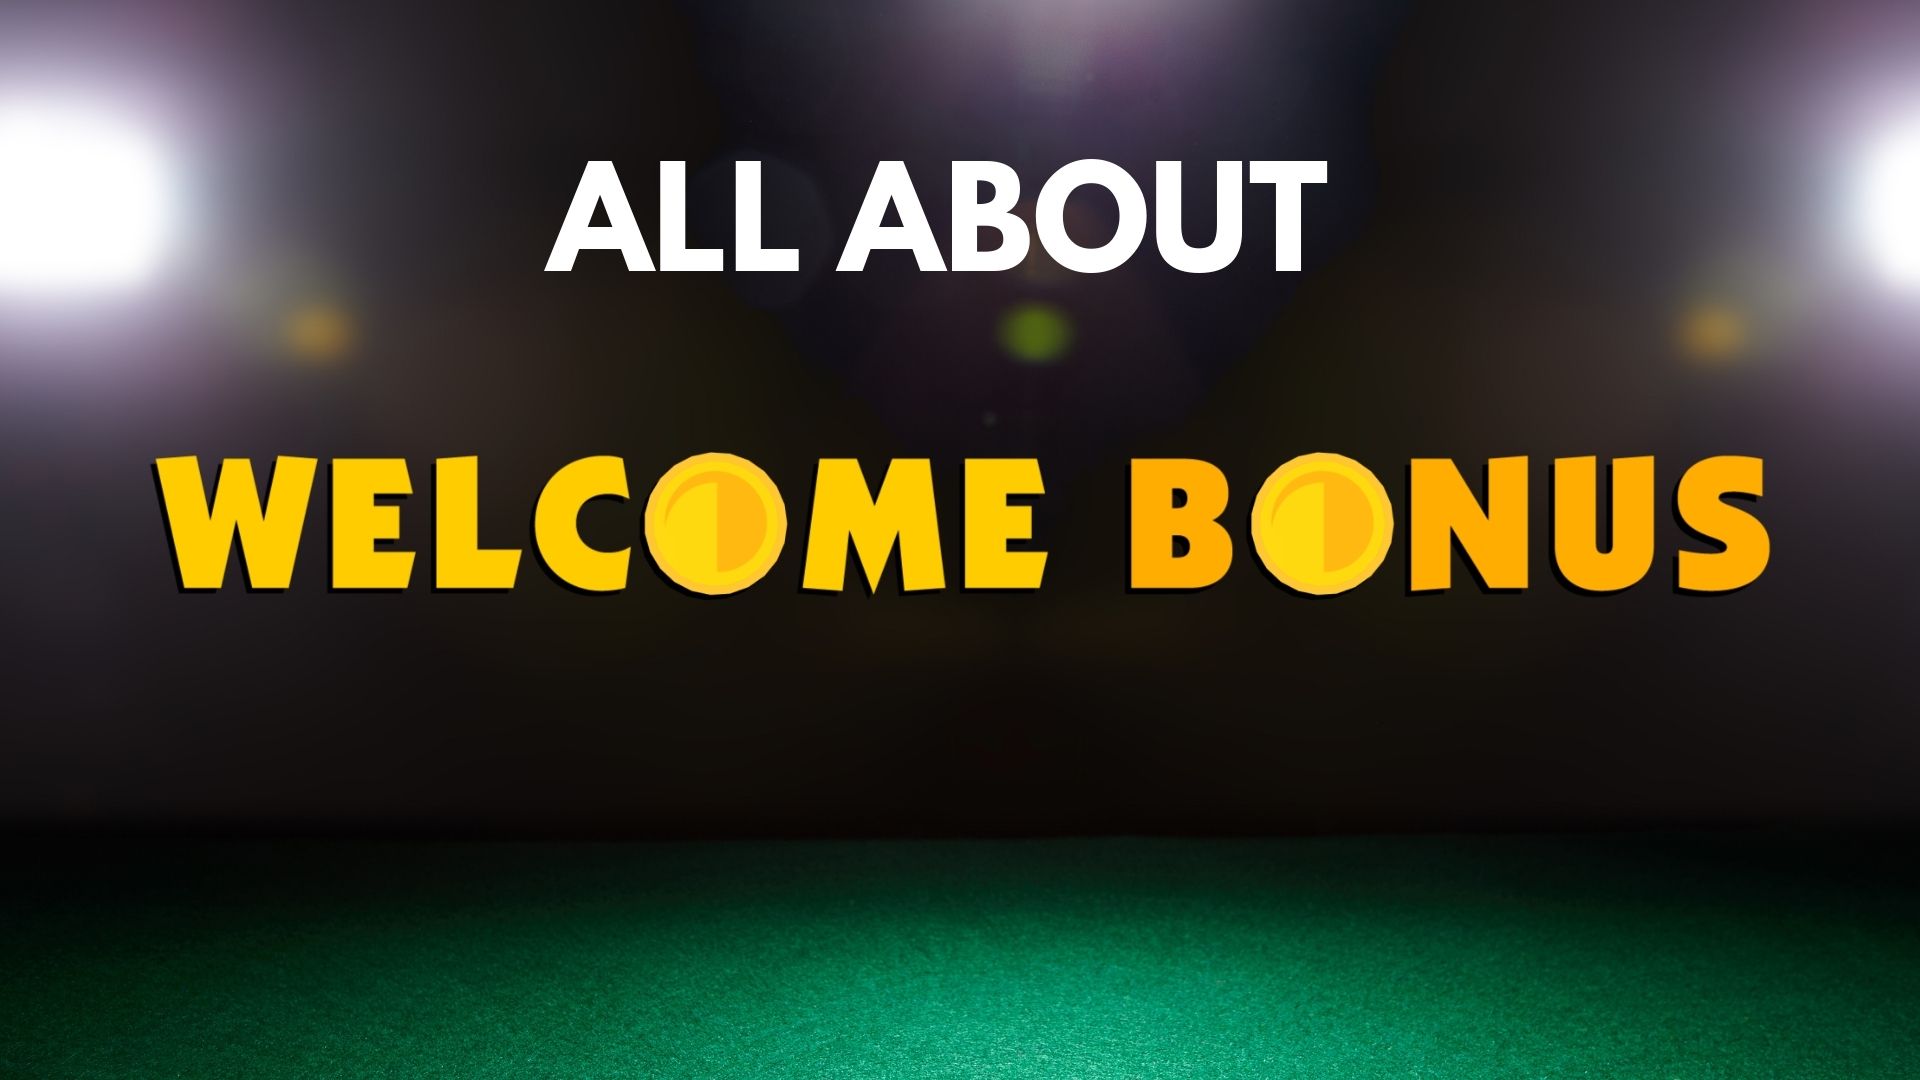 888 casino welcome bonus code